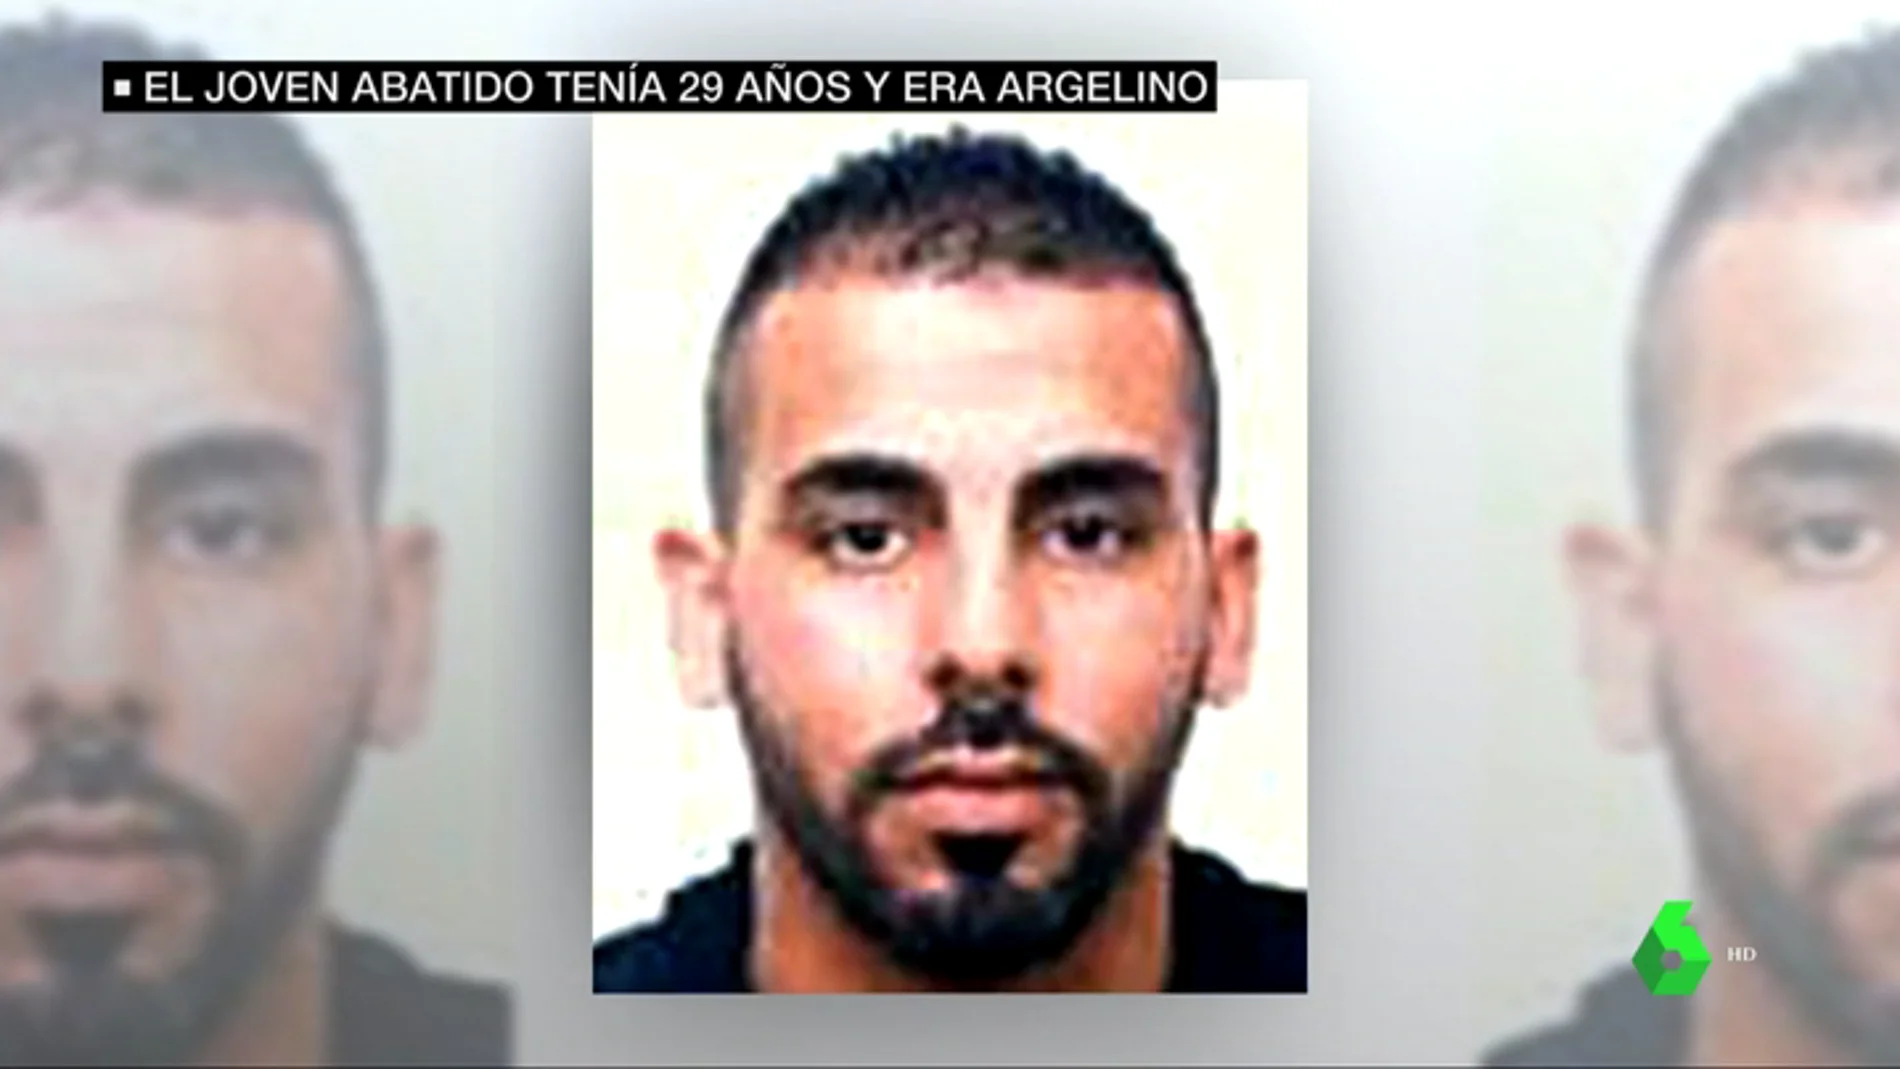 Identifican al atacante abatido en la comisaría de Cornellà: Abdelouahab T., argelino de 29 años